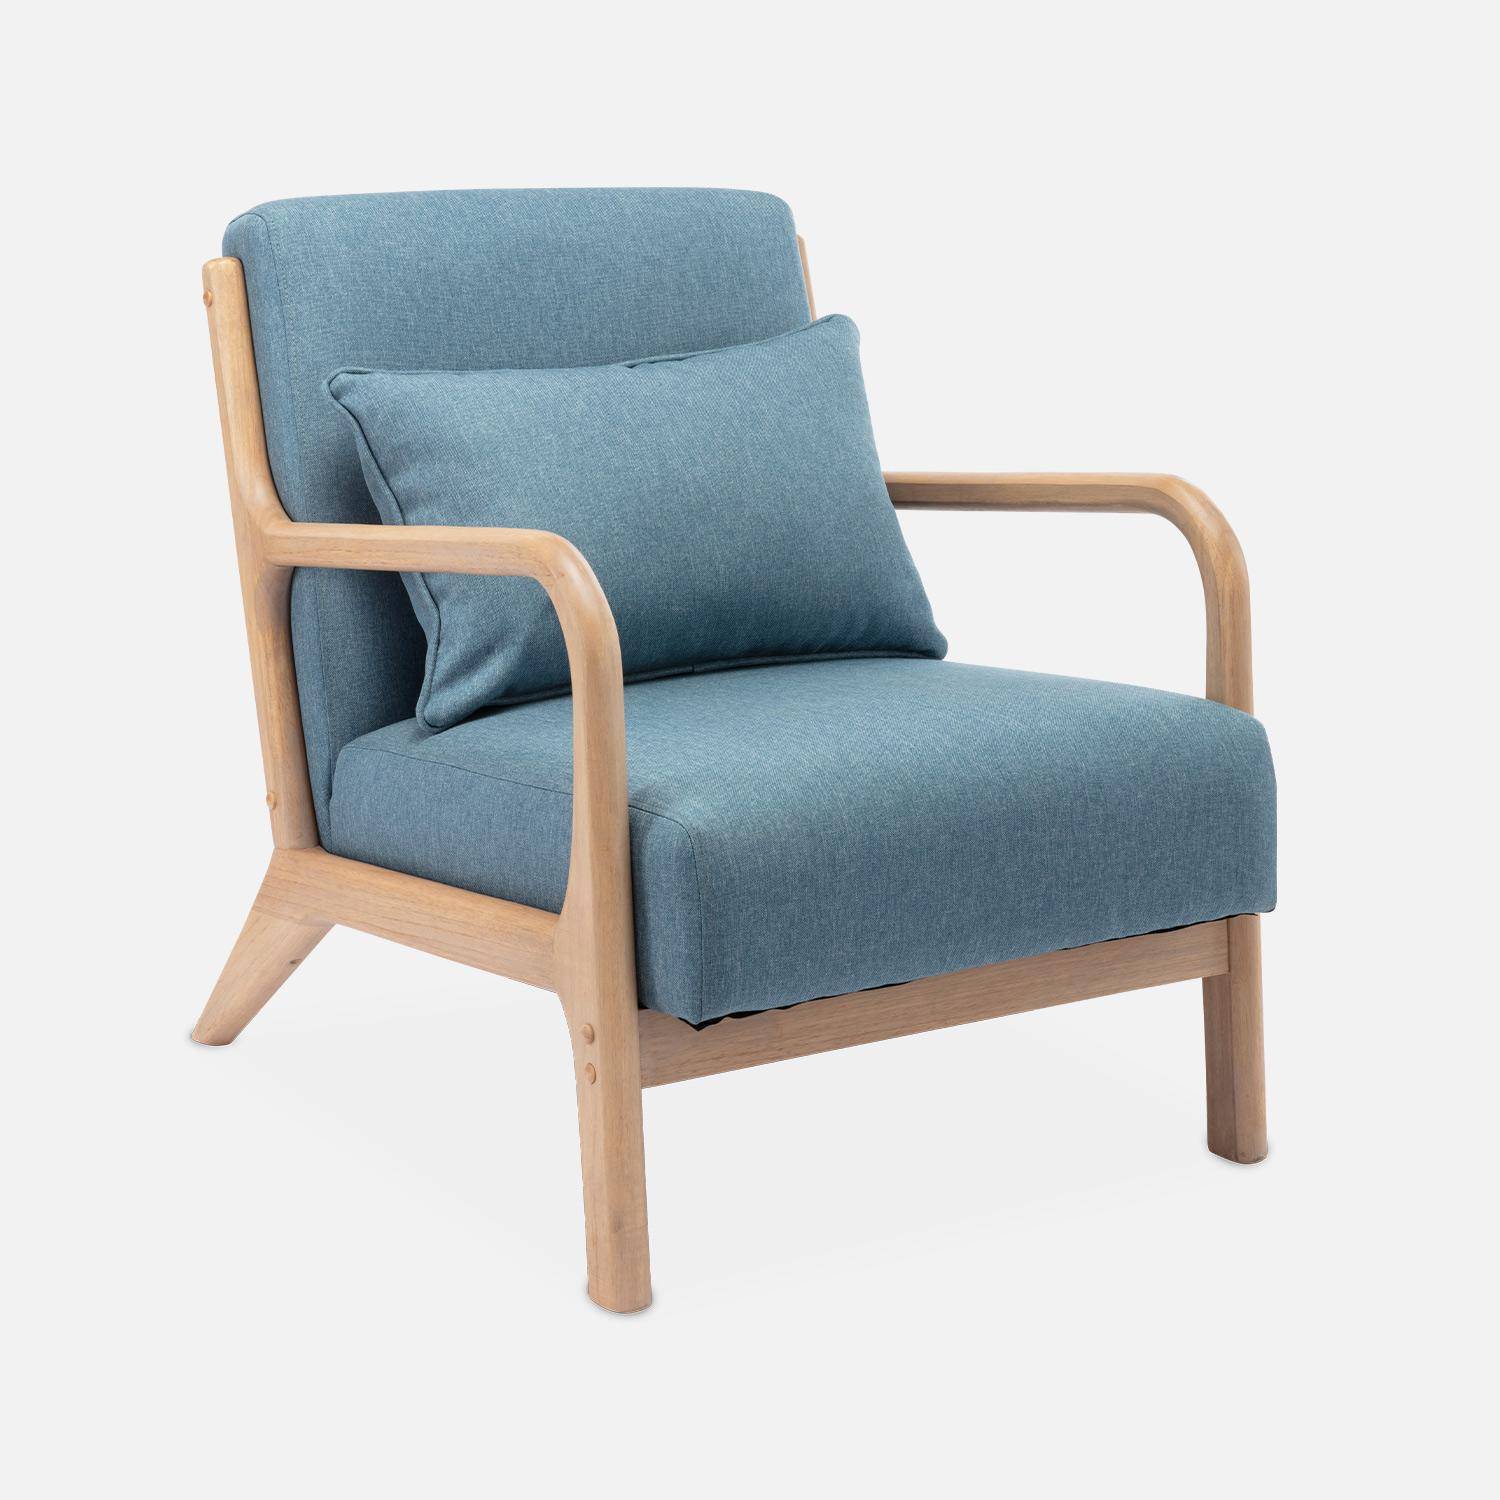 Sillón de diseño en madera y tela, 1 asiento recto fijo, patas de compás escandinavas, asiento cómodo, armazón de madera maciza, azul,sweeek,Photo4